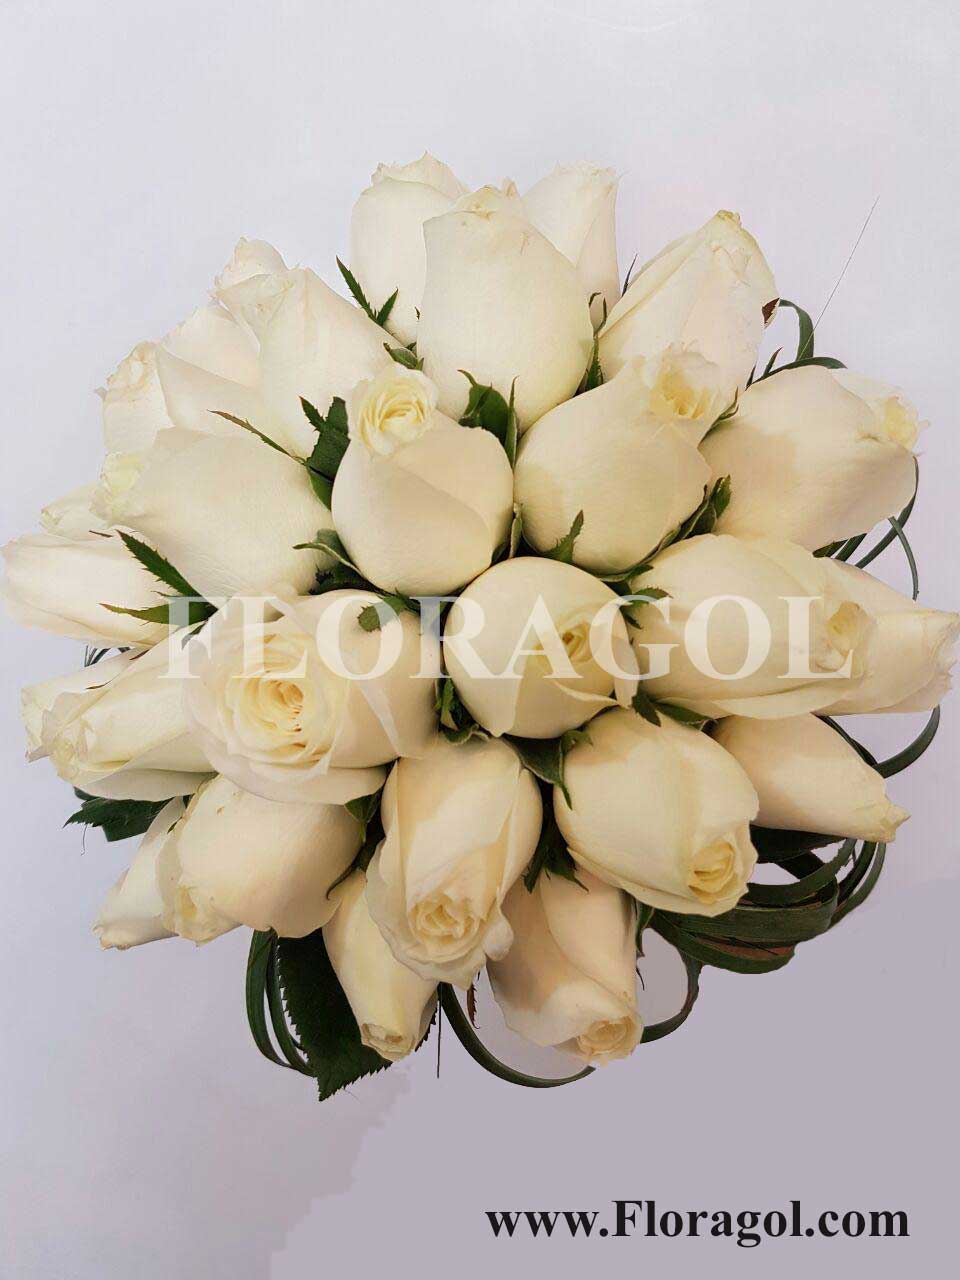 مدل دسته گل عروس با گل رز مصنوعی
